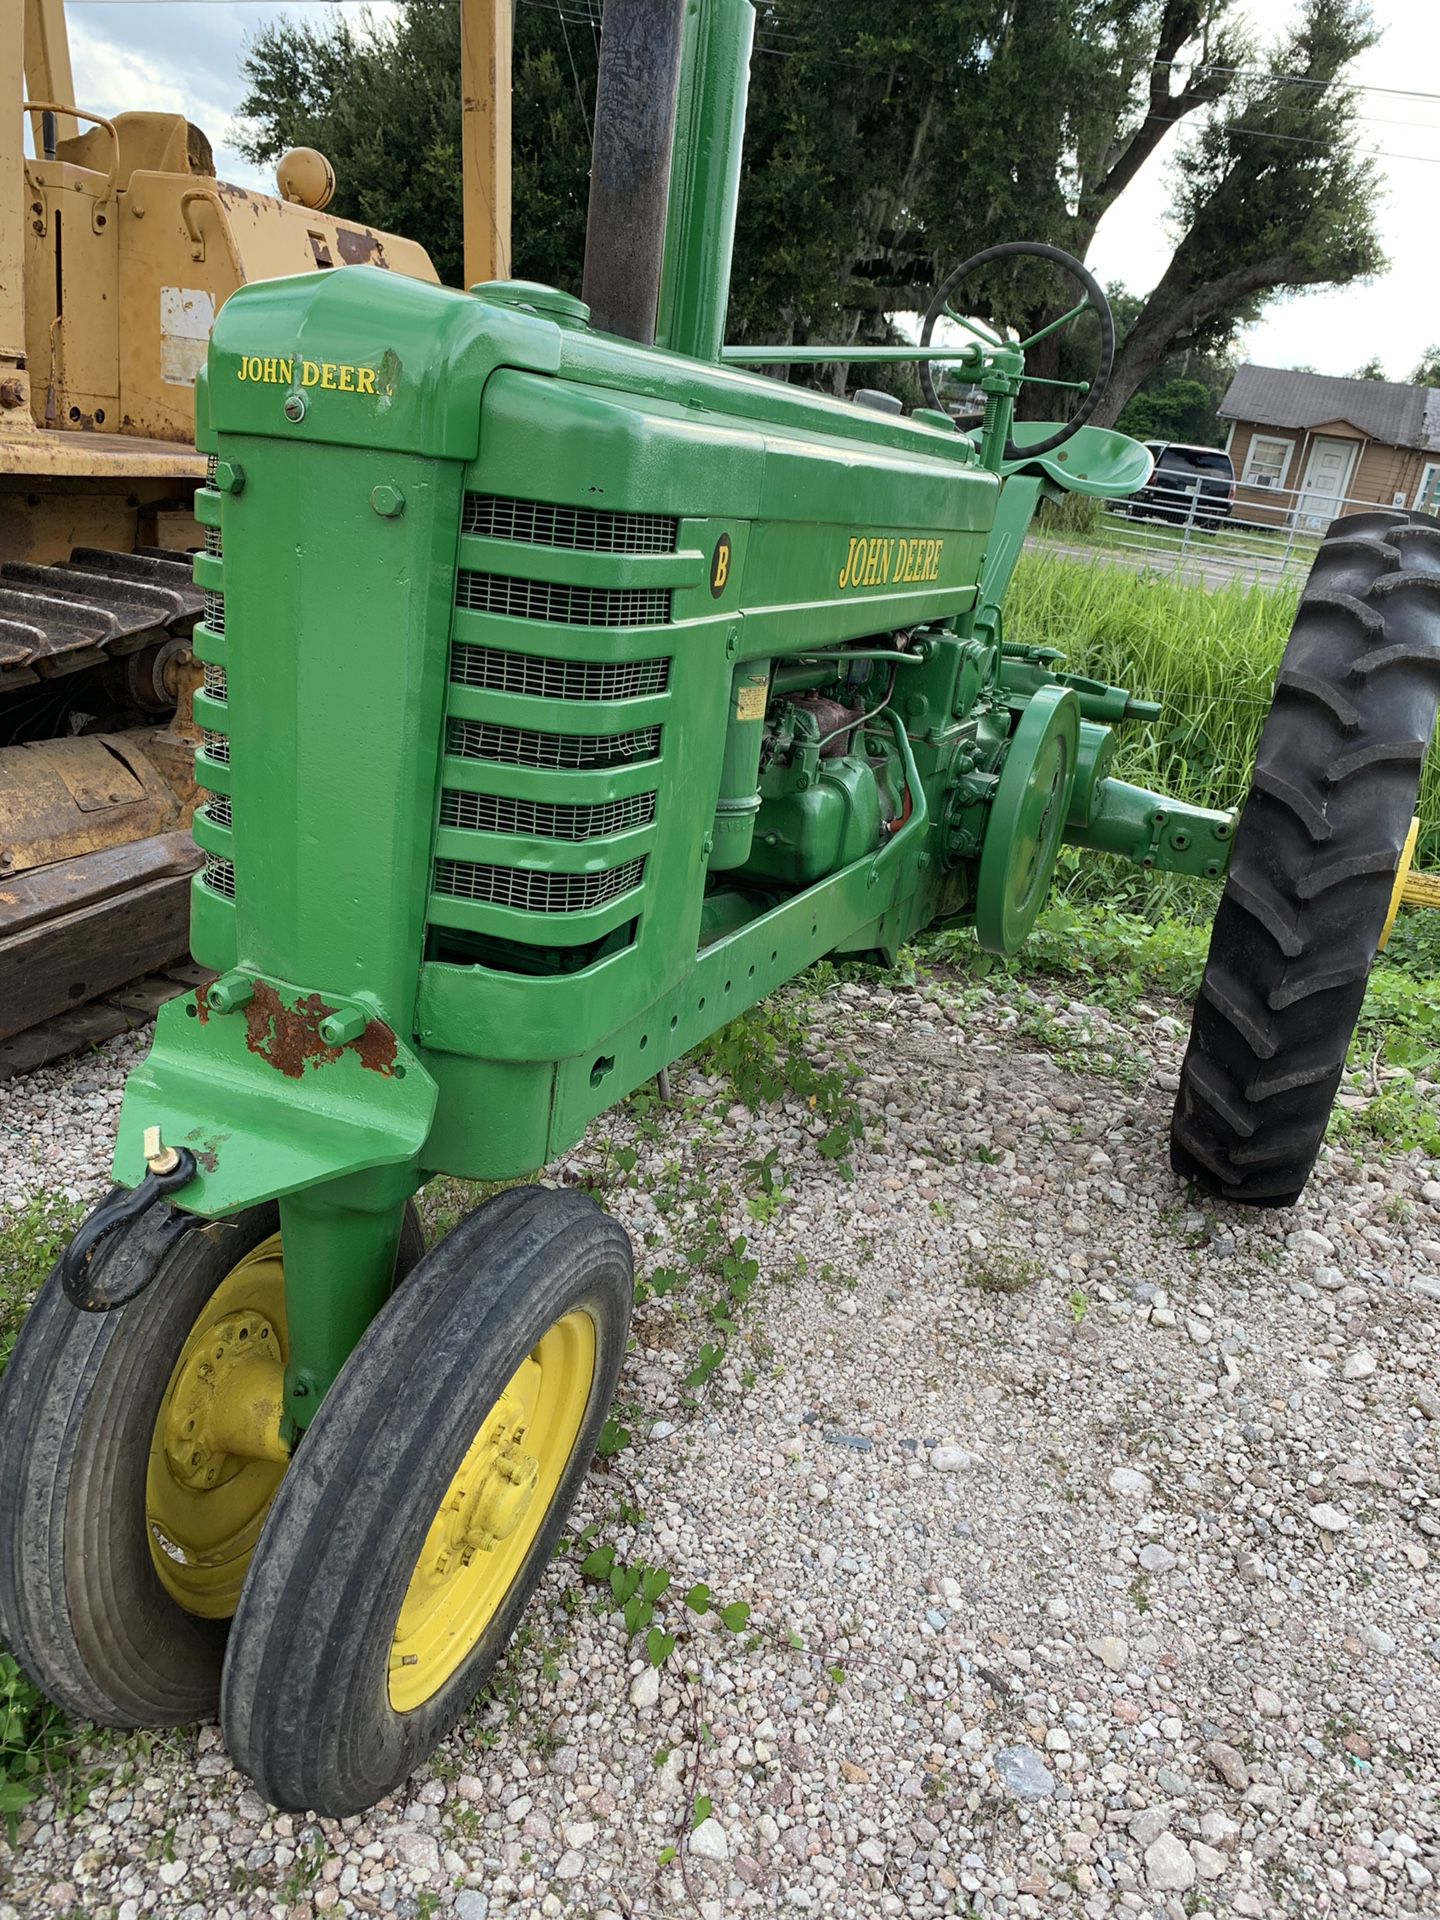 John Deere farm Tractor